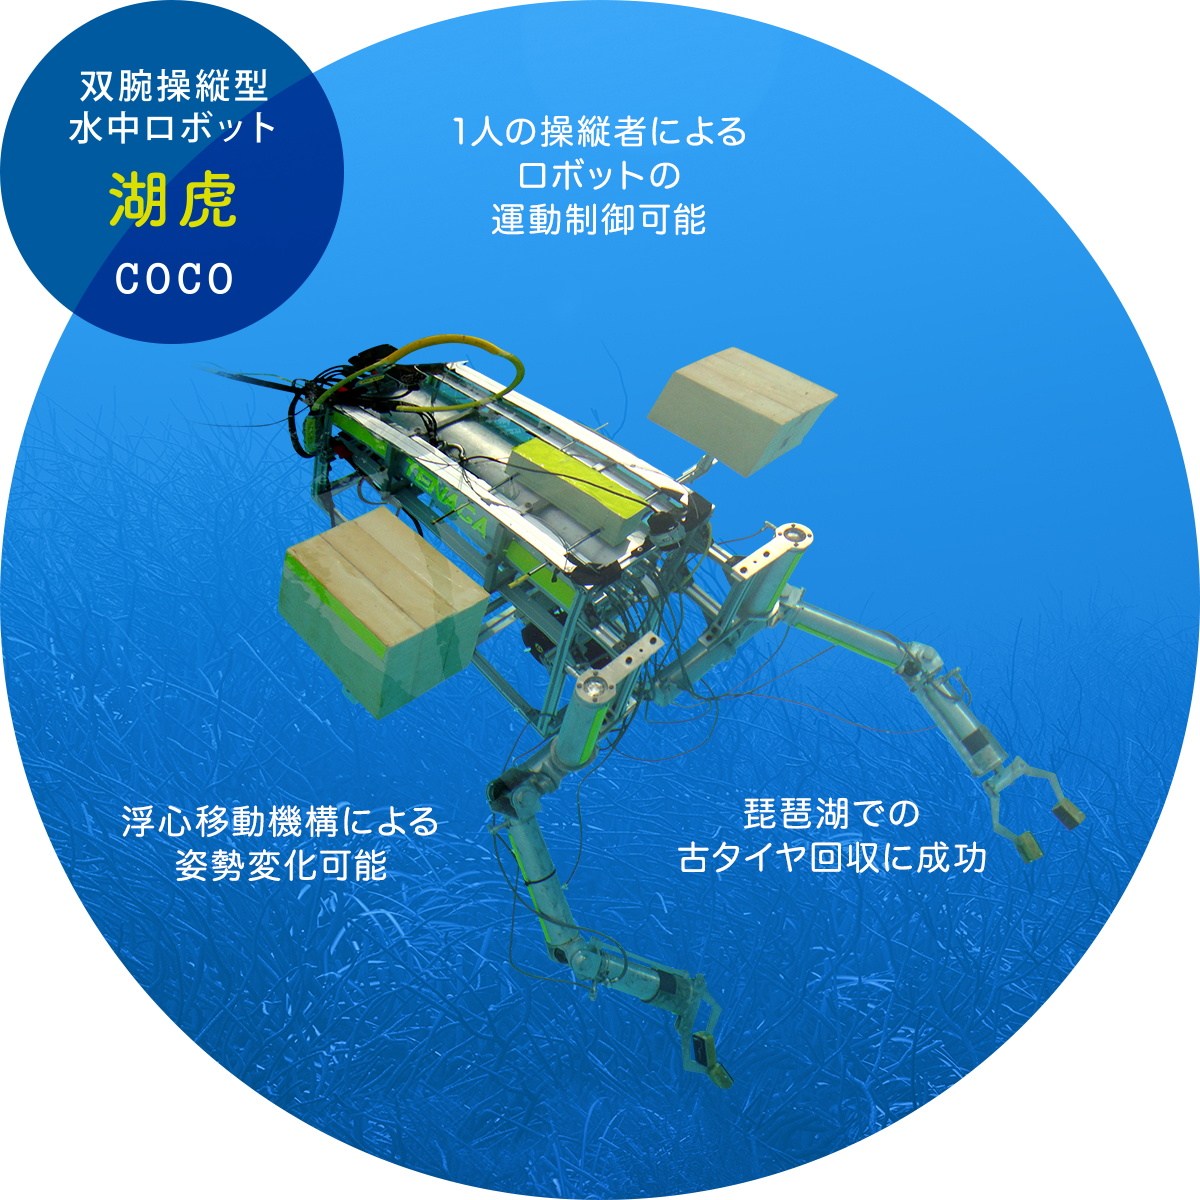 双腕操縦型 水中ロボット 湖虎 COCO